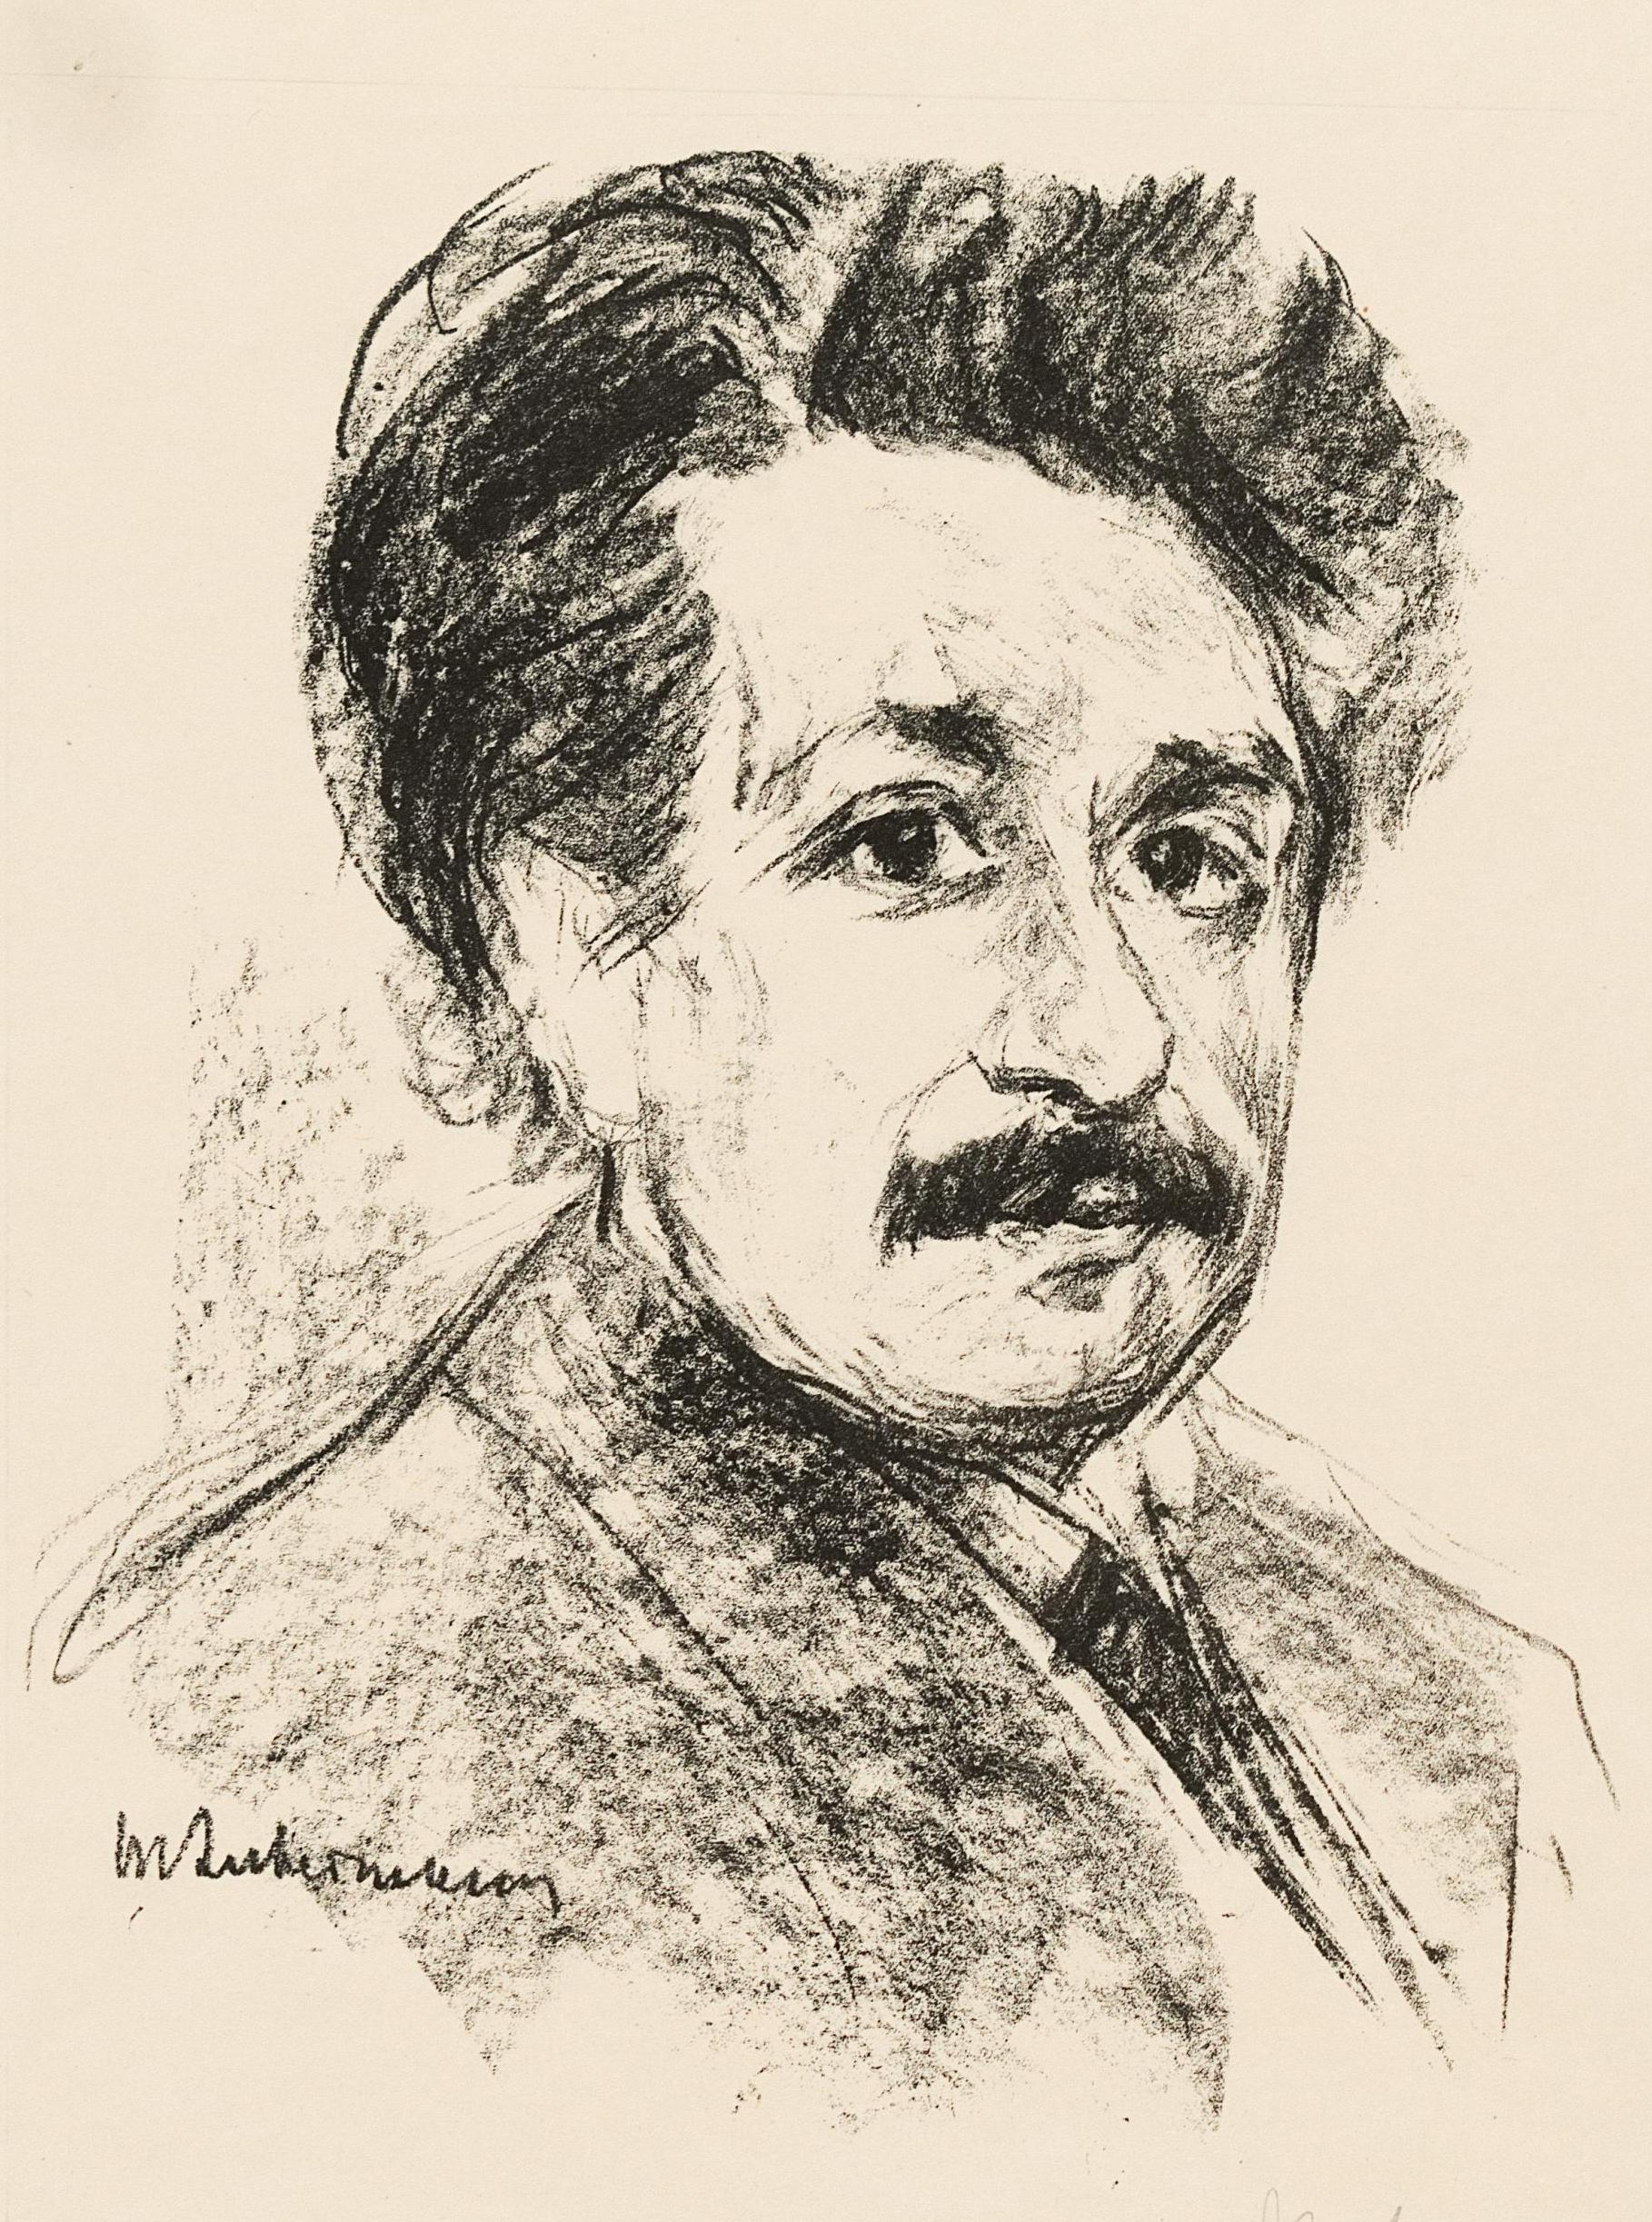 Człowiek, który okradł swoją żonę z jej życiowego szczęścia, naukowego dorobku? Litografia przedstawiająca Alberta Einsteina w 1925 roku, wykonana przez Maxa Liebermanna (domena publiczna).